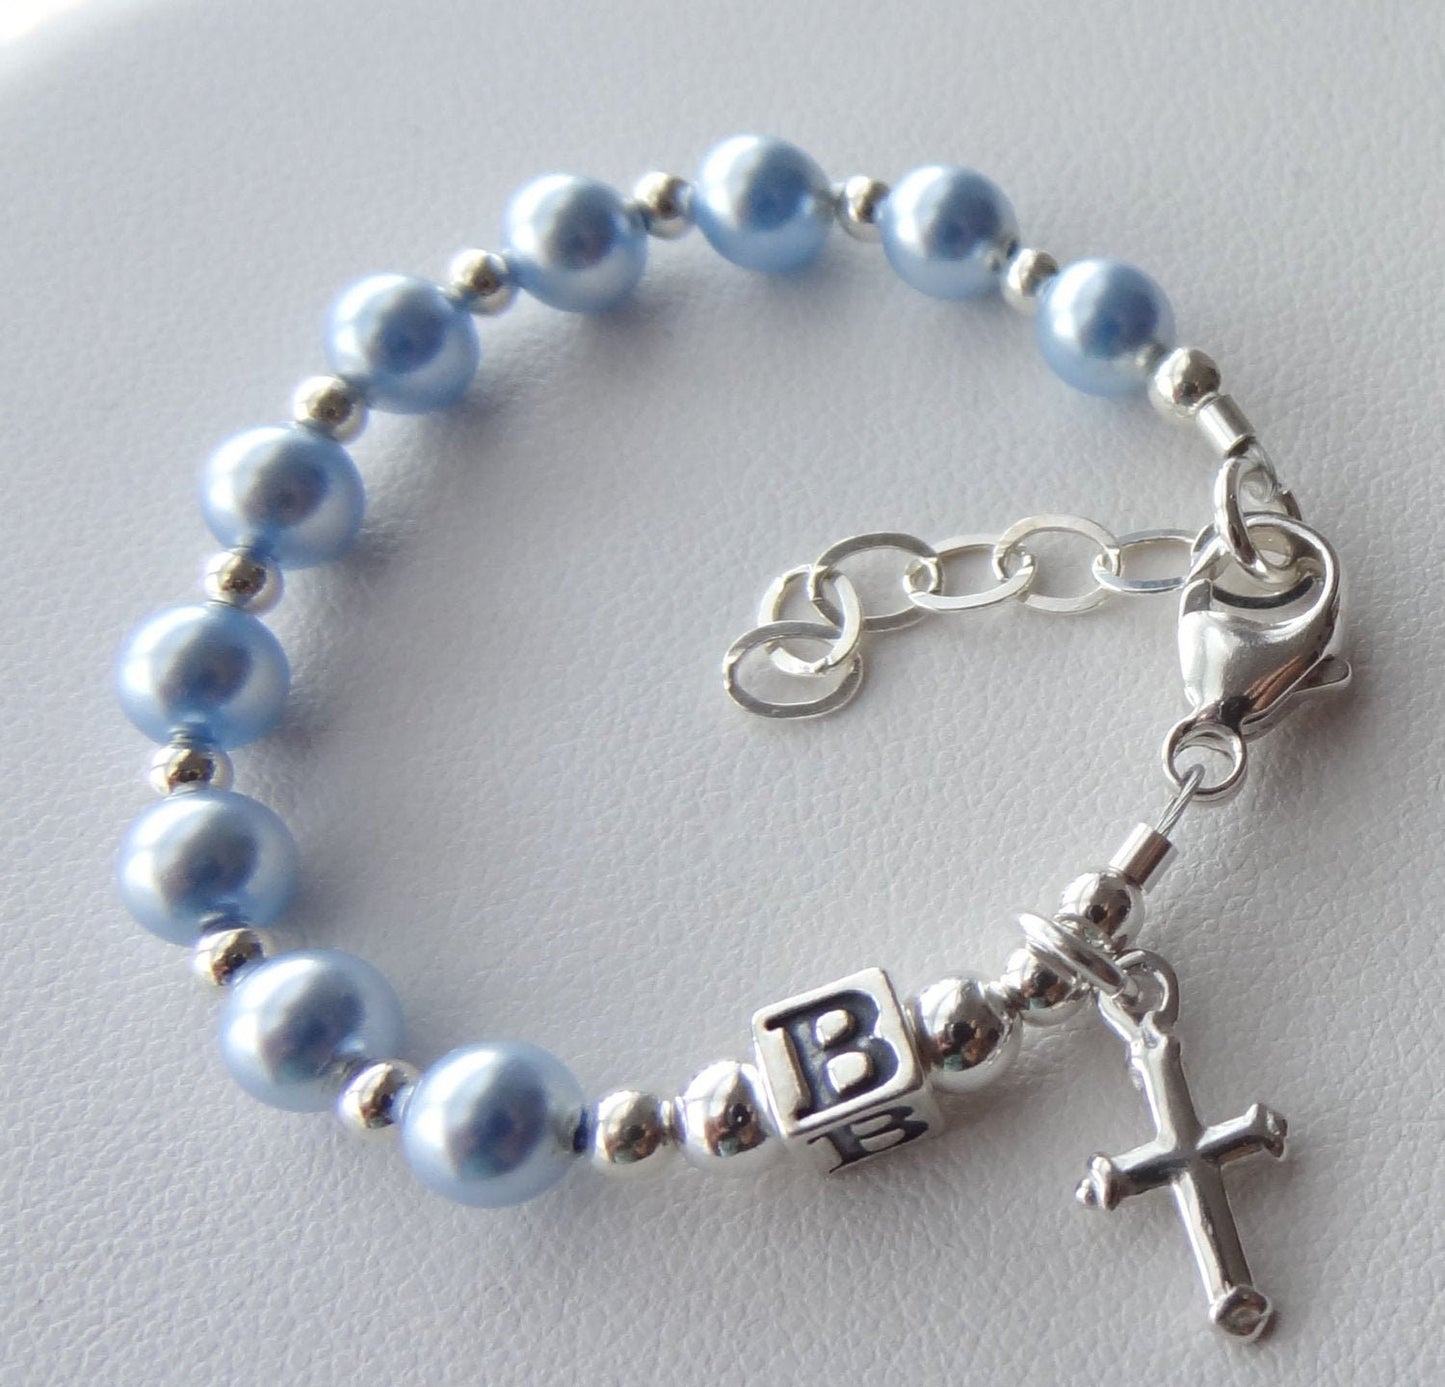 Personalized Baby Boy Blue Rosary Bracelet,Baby Boy Baptism Bracelet,First Communion Christening Boy Bracelet,Baptism to Wedding Bracelet